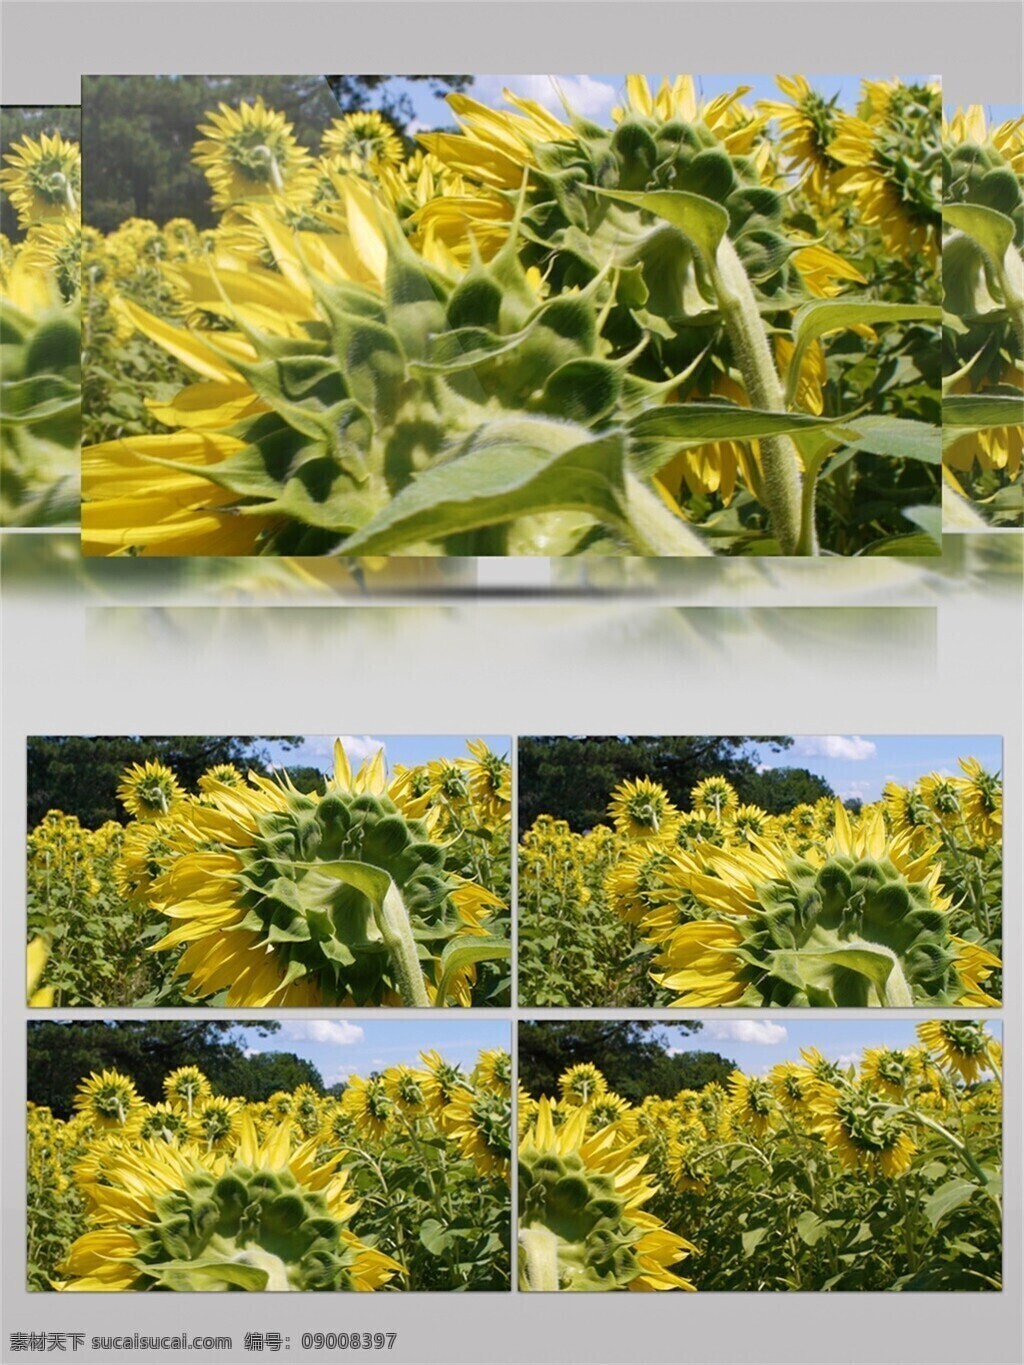 太阳 下 盛放 向日葵 植物 花朵 黄色 花瓣 绿叶 阳光 天空下 开放